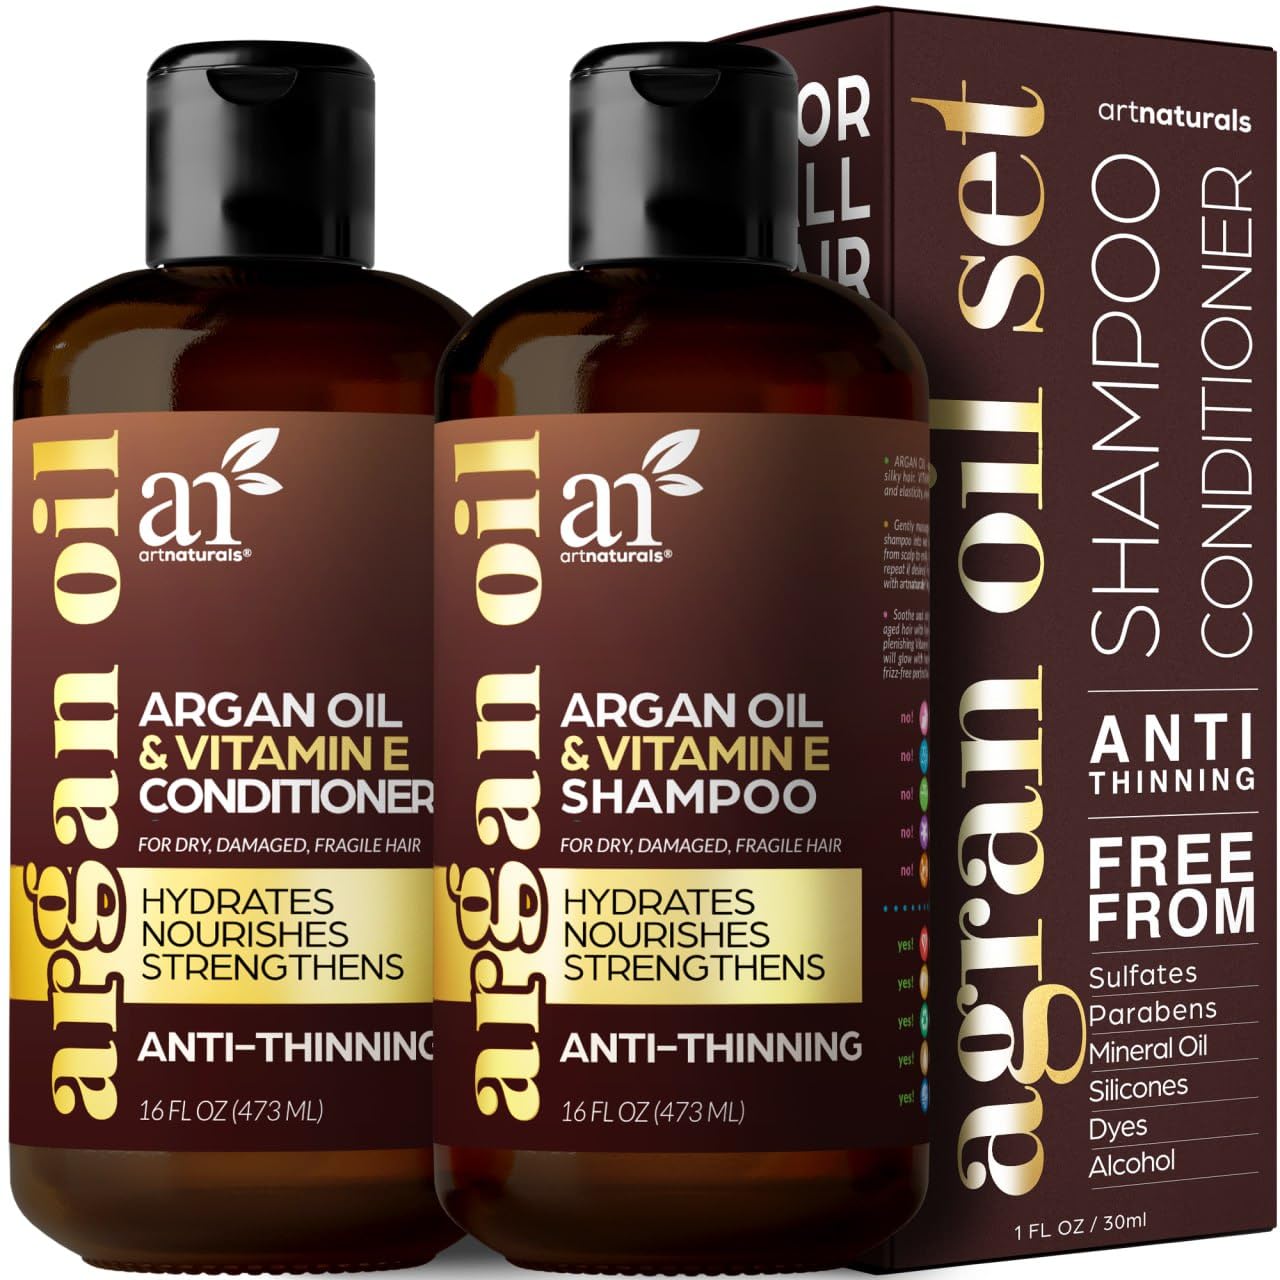 artnaturals Moroccan Argan Oil Hair Loss Shampoo & Conditioner Set - (2 x 16 Fl Oz / 473ml) - Sulfate Free Hair Regrowth - Treatment for Hair Loss, Thinning Hair & Hair Growth, Men & Women